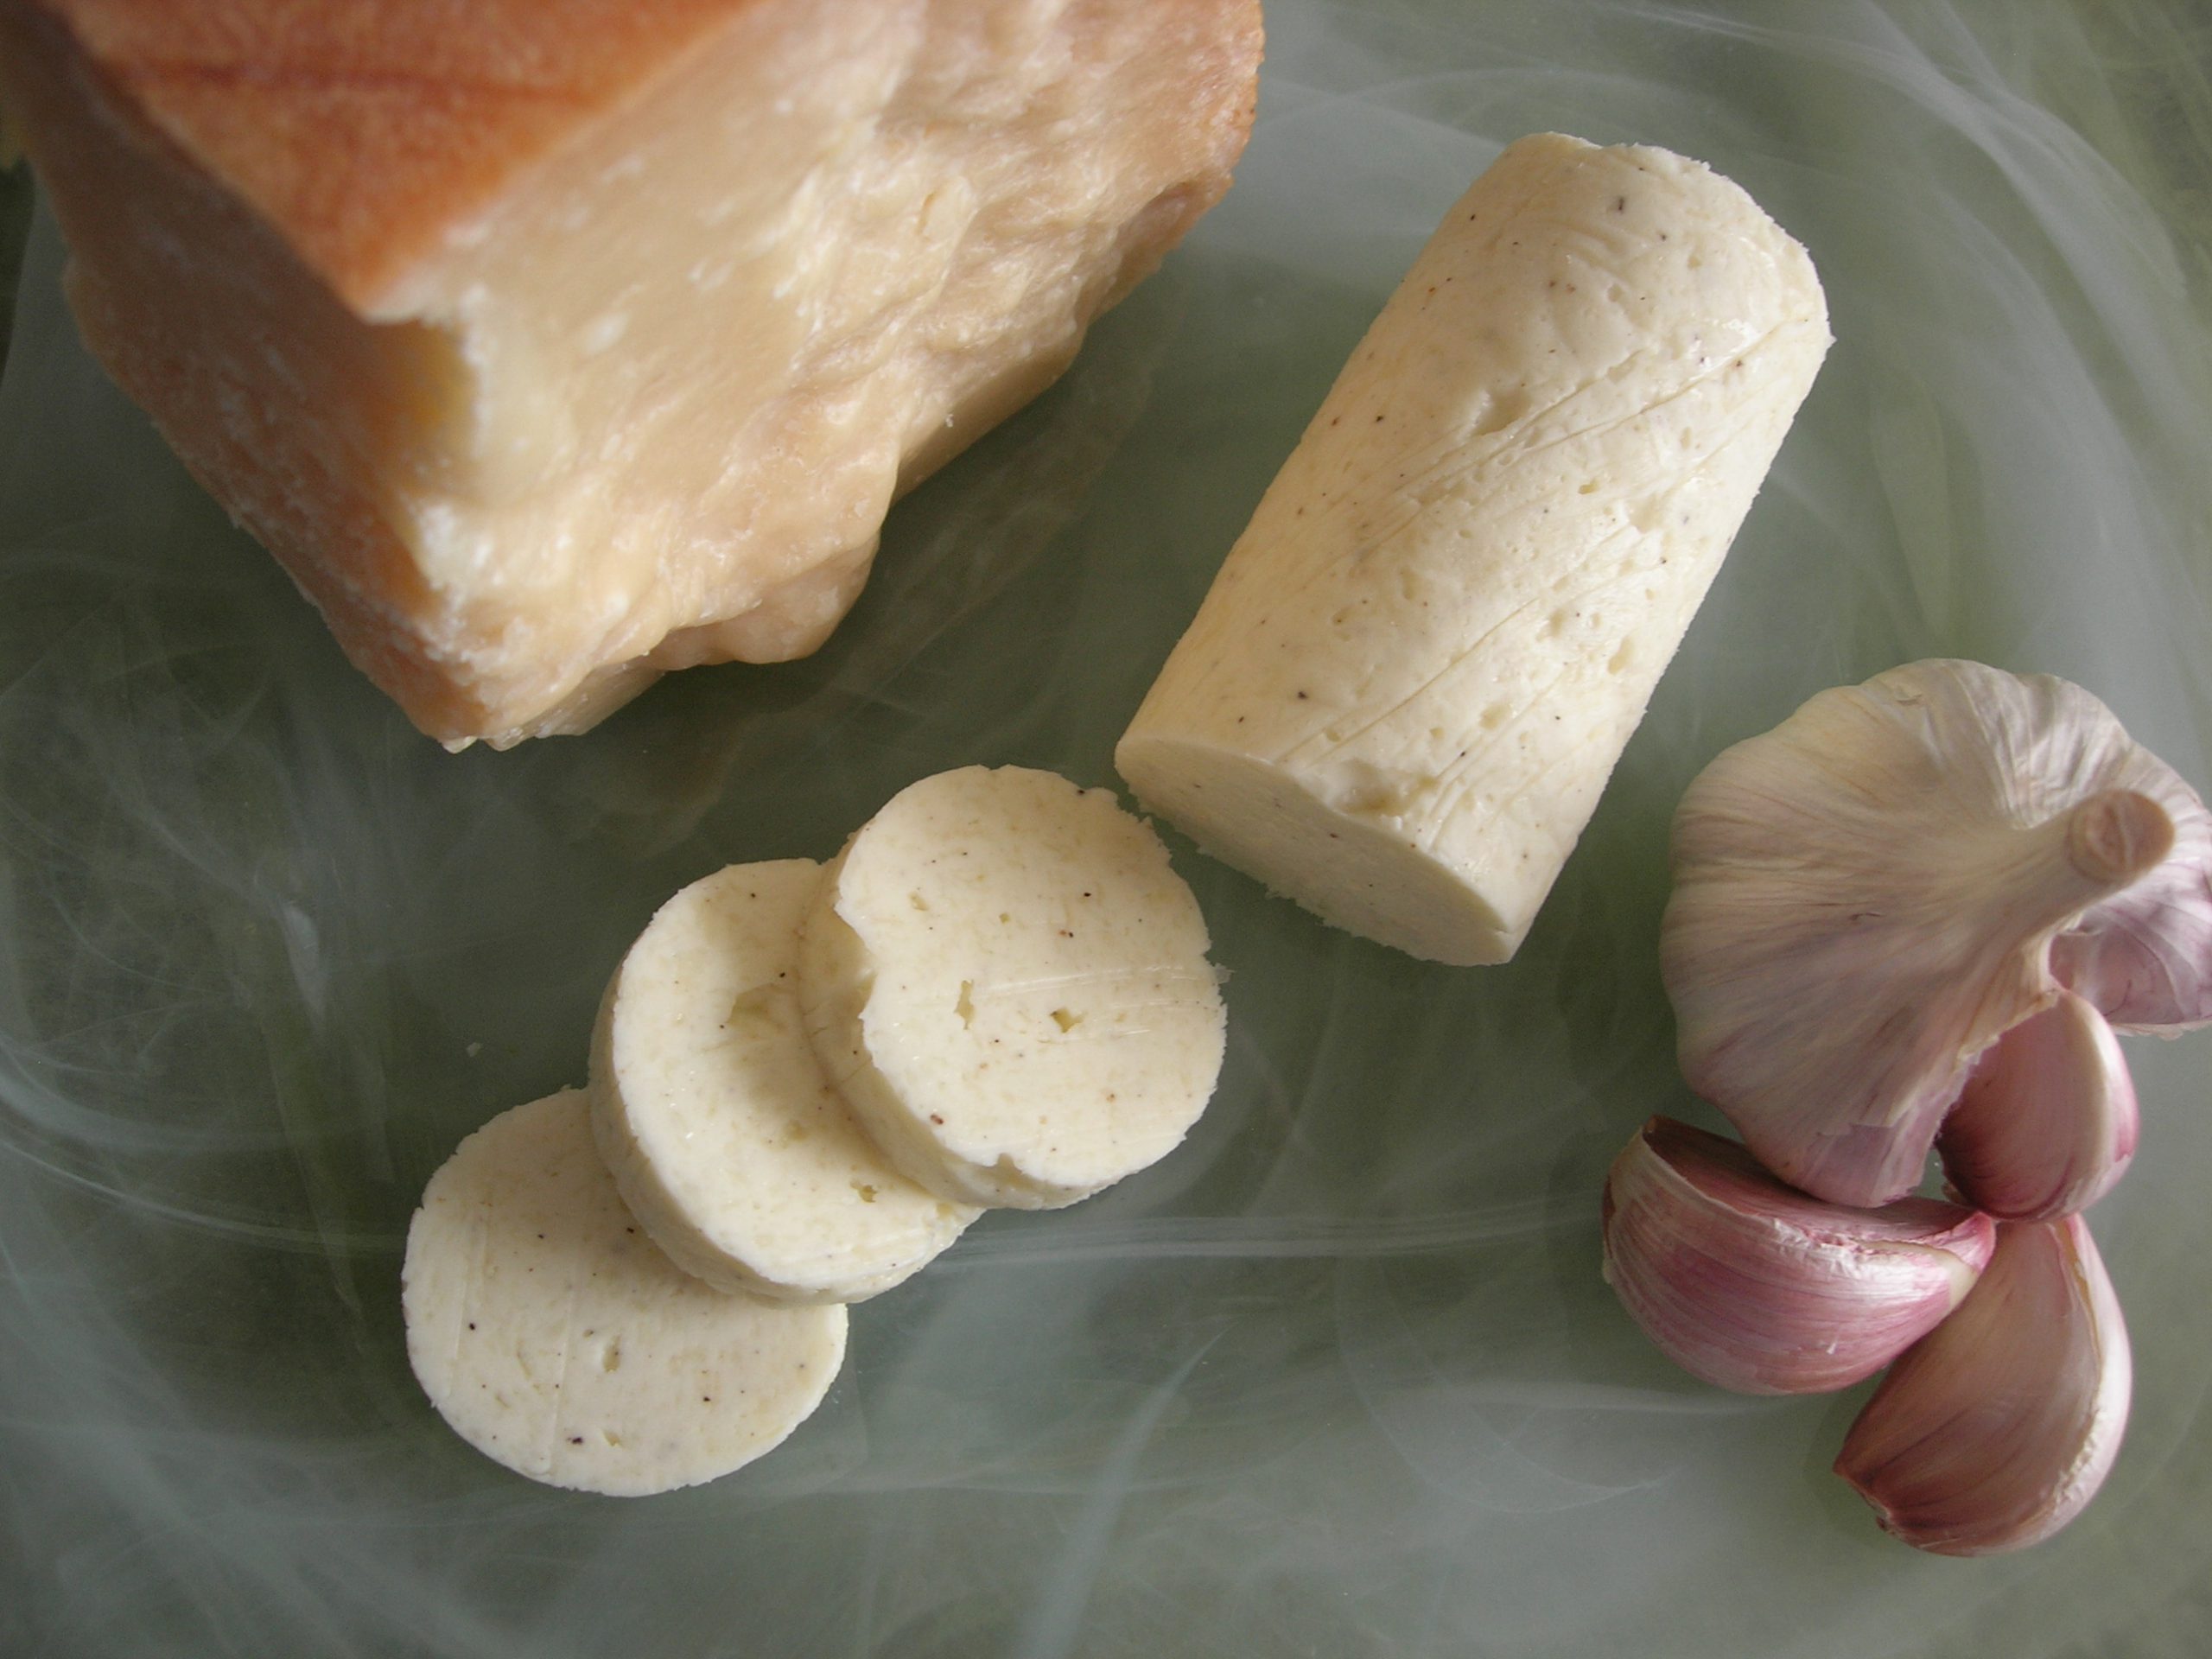 Parmesan Reggiano-Garlic